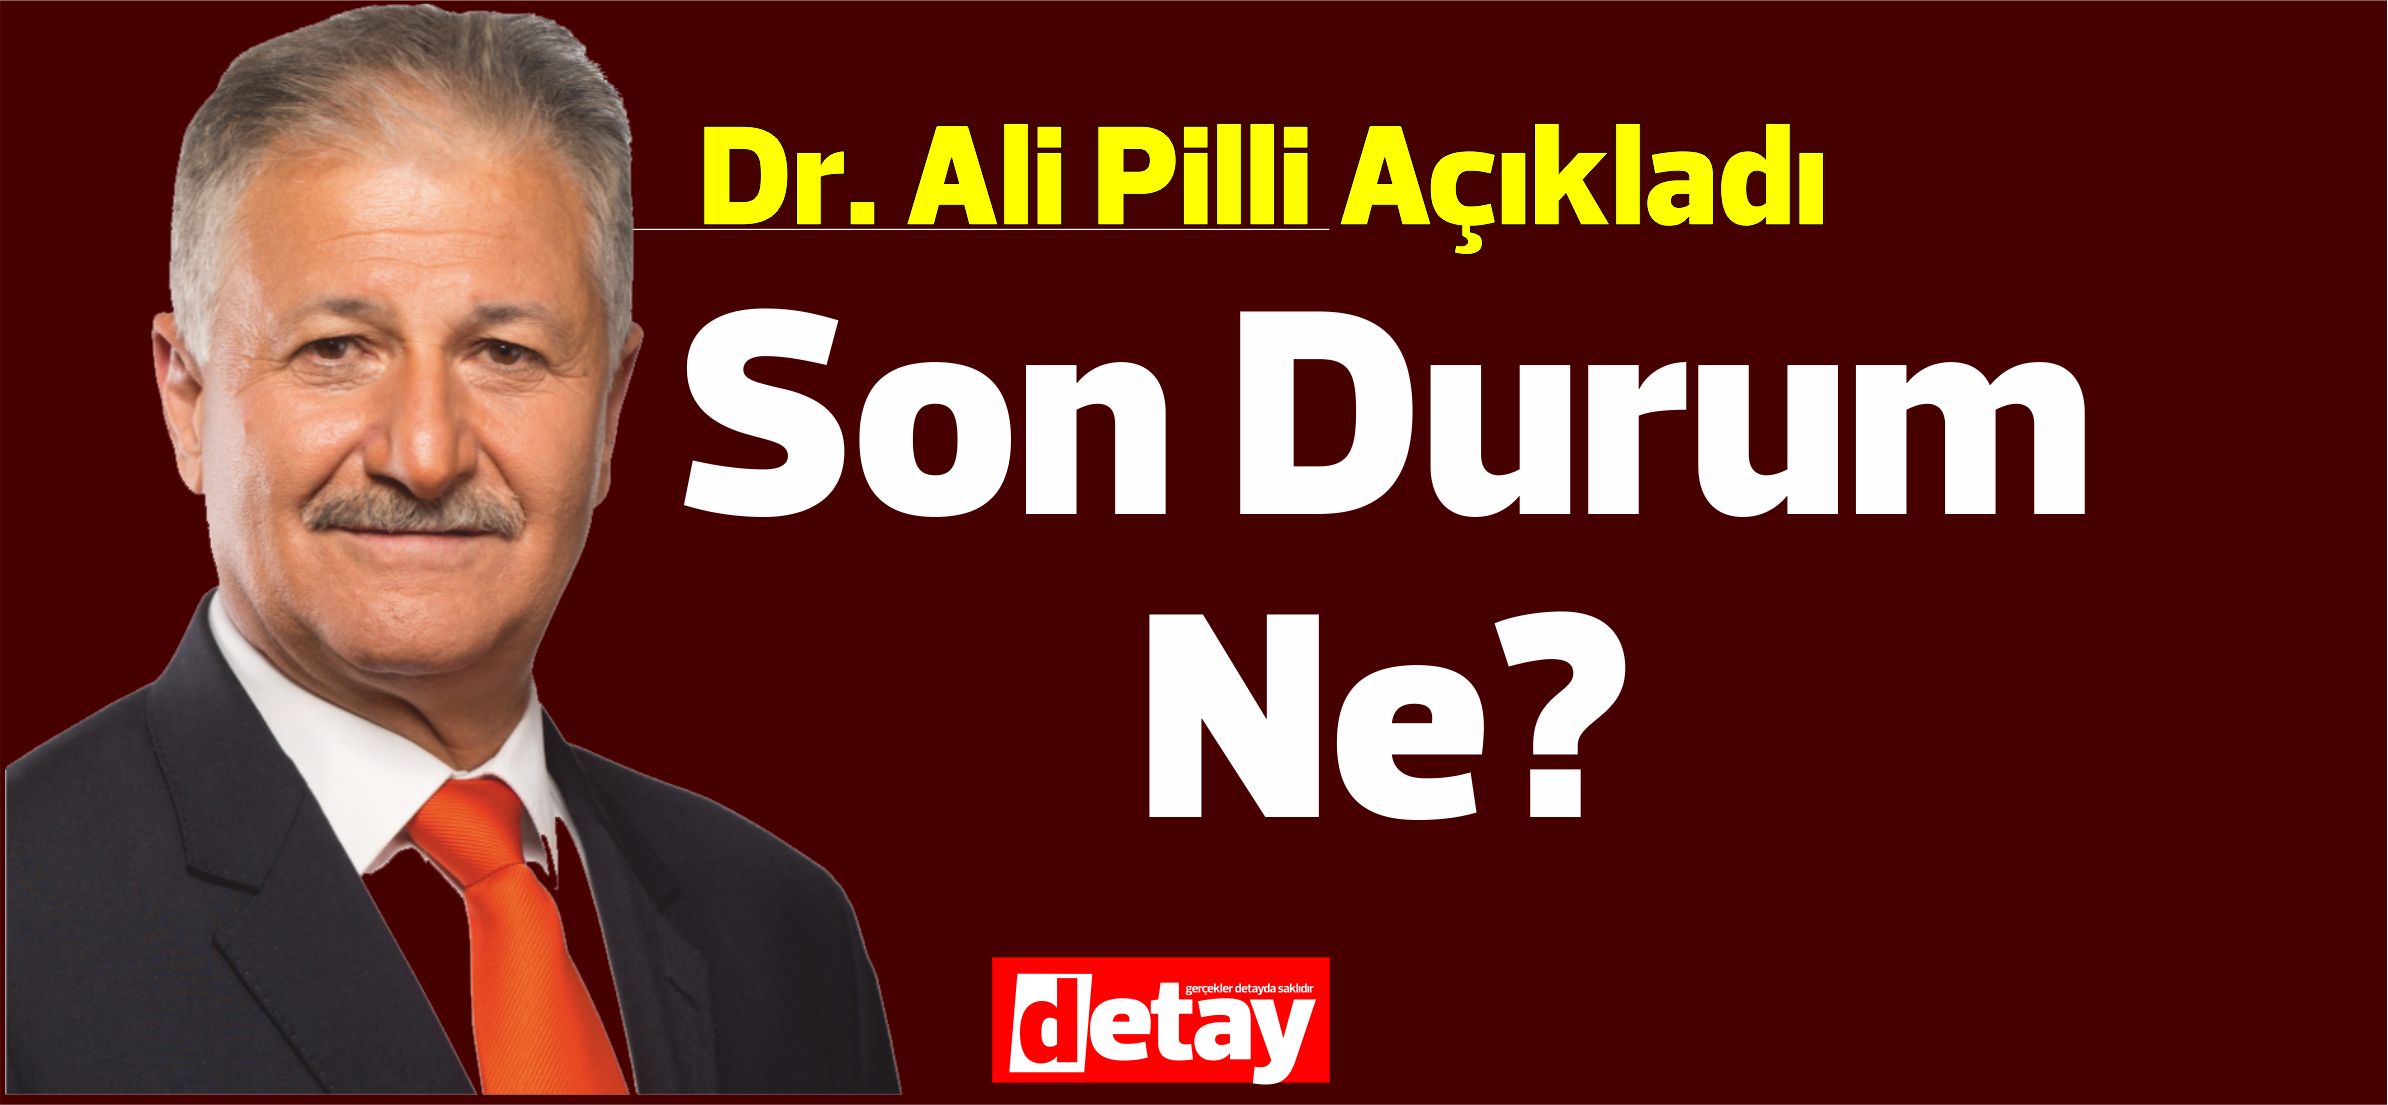 Ο υπουργός Υγείας Ali Pilli: “Εάν είναι απαραίτητο, θα ληφθούν δραστικά μέτρα”